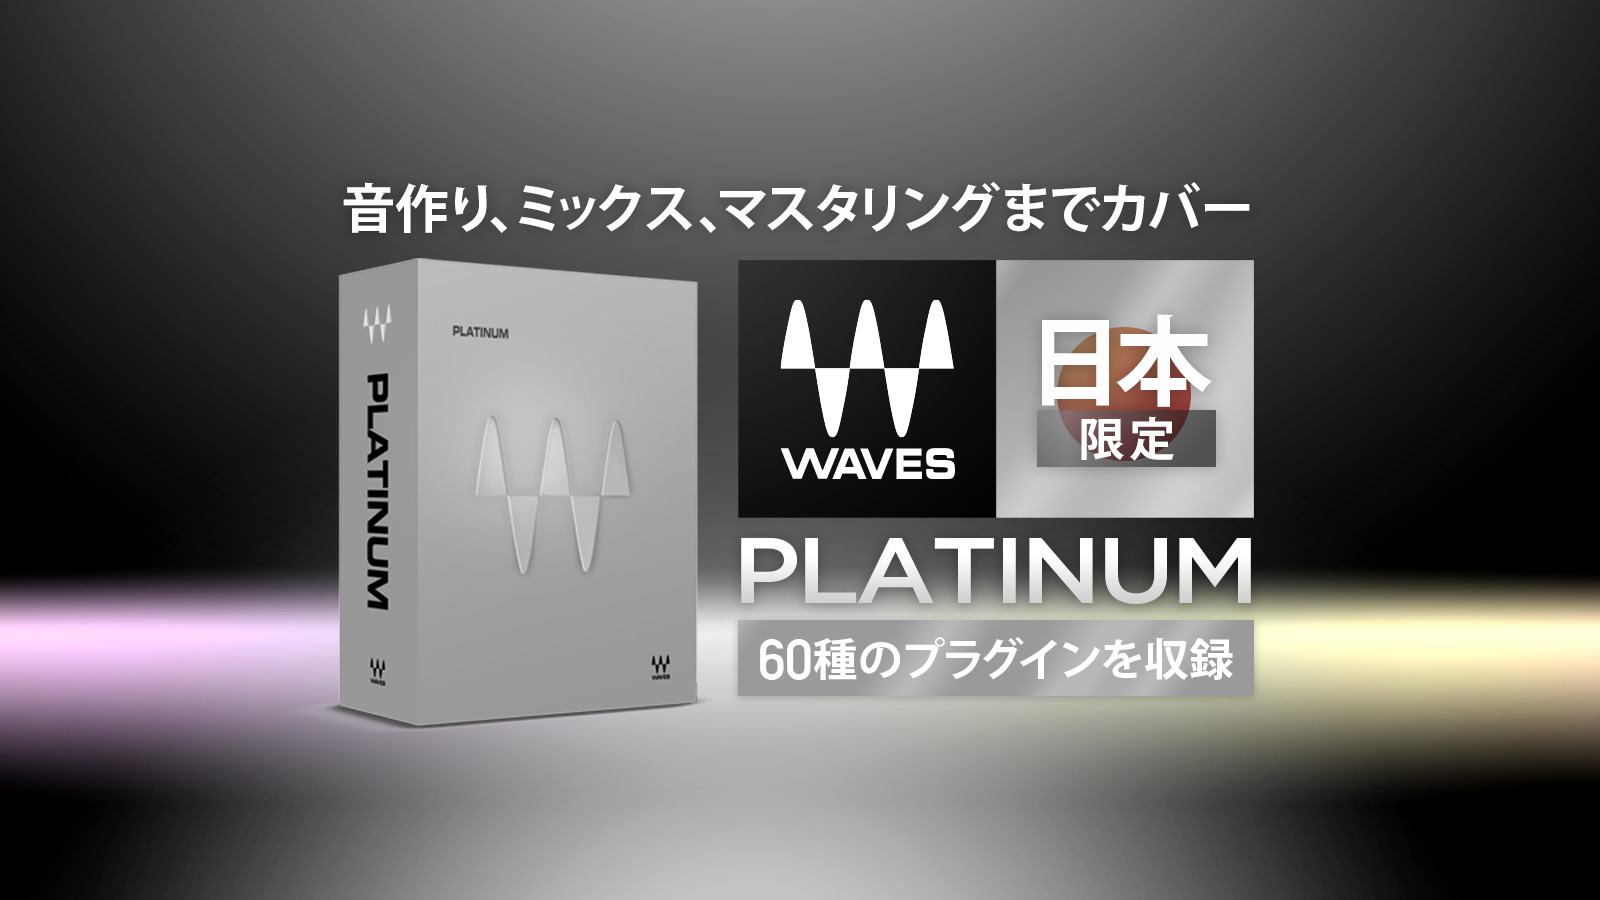 *「Waves Platinum」が日本限定で税込24,200円となるプロモーションを開催 音楽制作のために何か1つの製品を持つとするなら、様々な技術を要するプロセッシングを効果的に学習、実践できるWaves Platinumが最適ではないでしょうか。ダイナミクス、イコライゼーション、リバーブ、ピッ […]